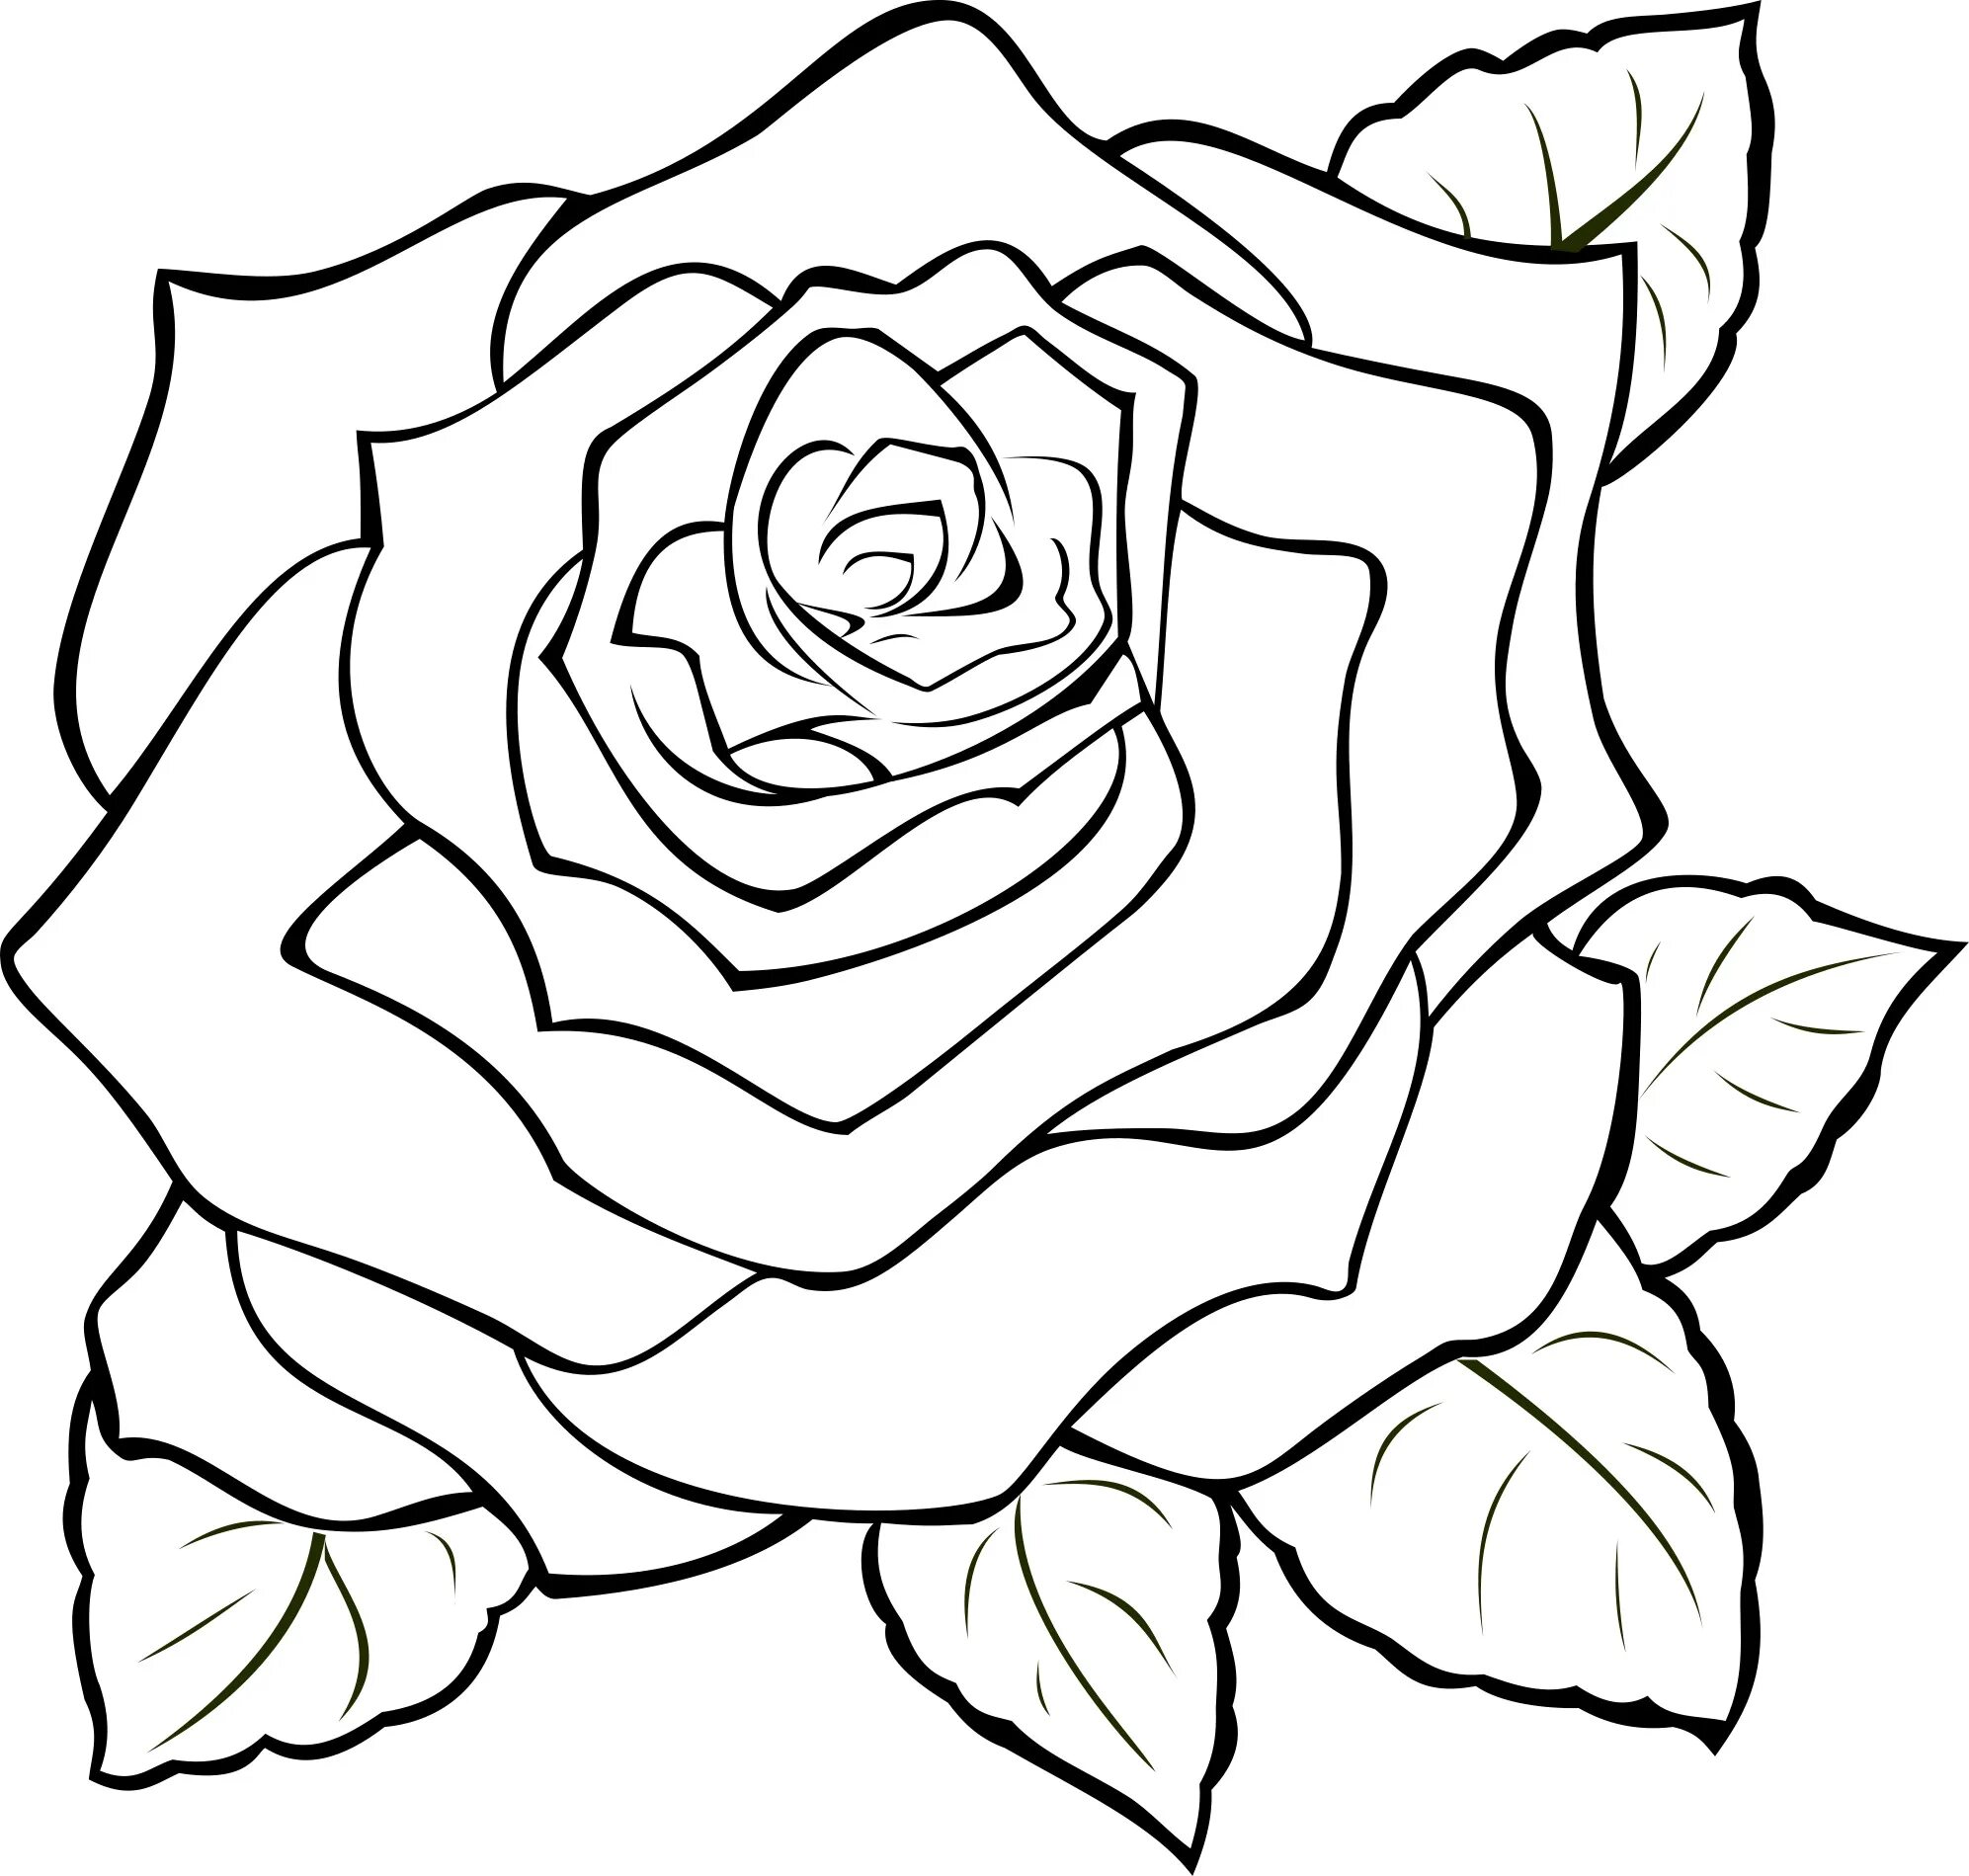 Цветы. Раскраска. Раскраски цветы красивые. Рисунок розы для срисовки. Контур скопировать